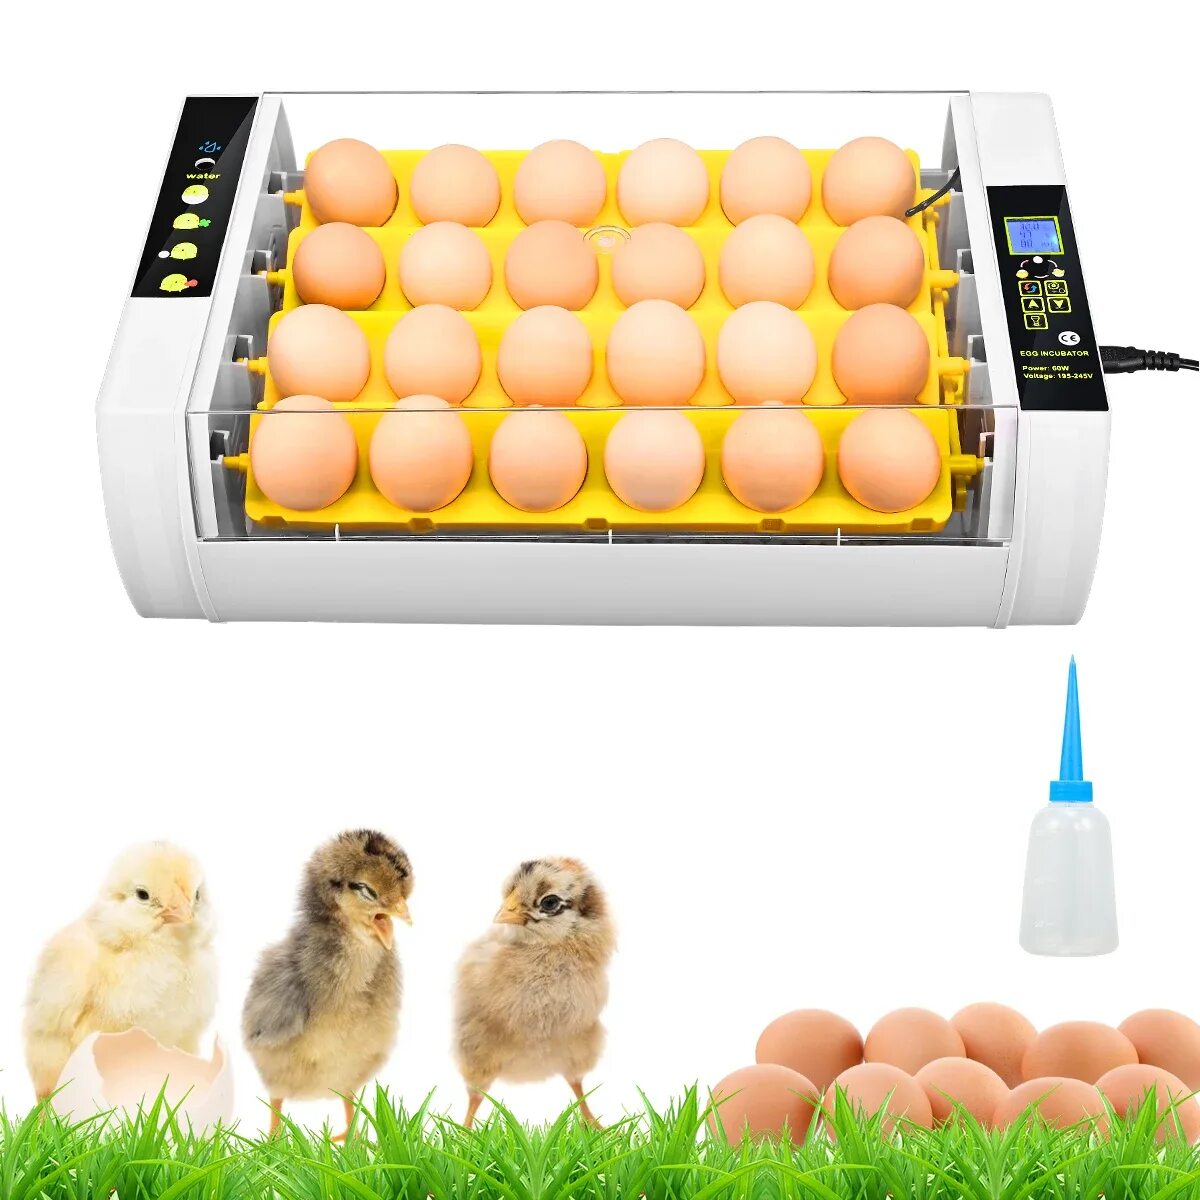 Инкубатор для яиц автоматический домашний. Инкубатор Egg incubator. Инкубатор для яиц Egg incubator QC Pass 04. Fully Automatic Egg incubator. Инкубатор для яиц fully Automatic Egg Incubato.